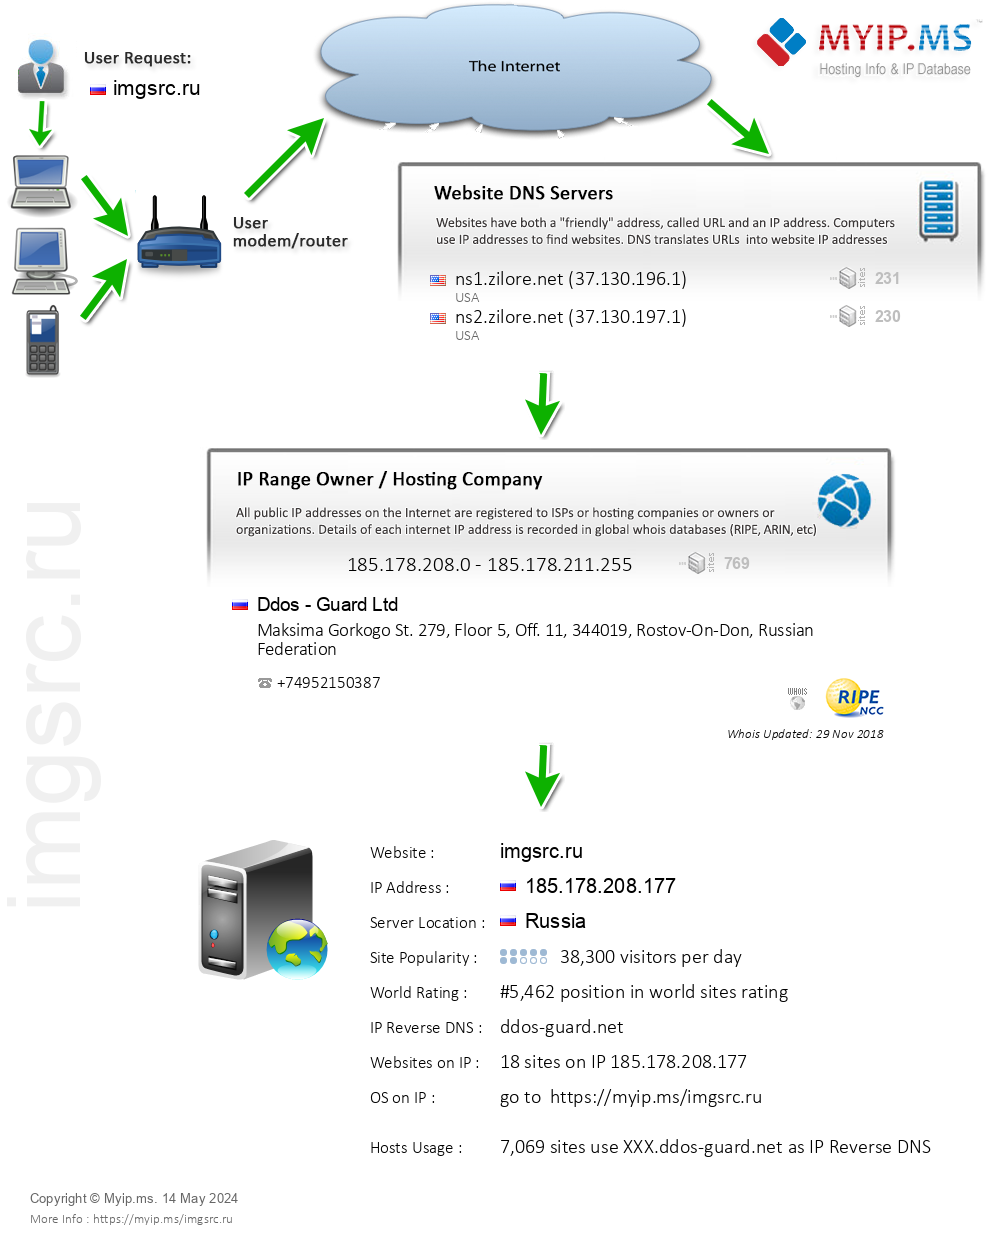 Imgsrc.ru - Website Hosting Visual IP Diagram